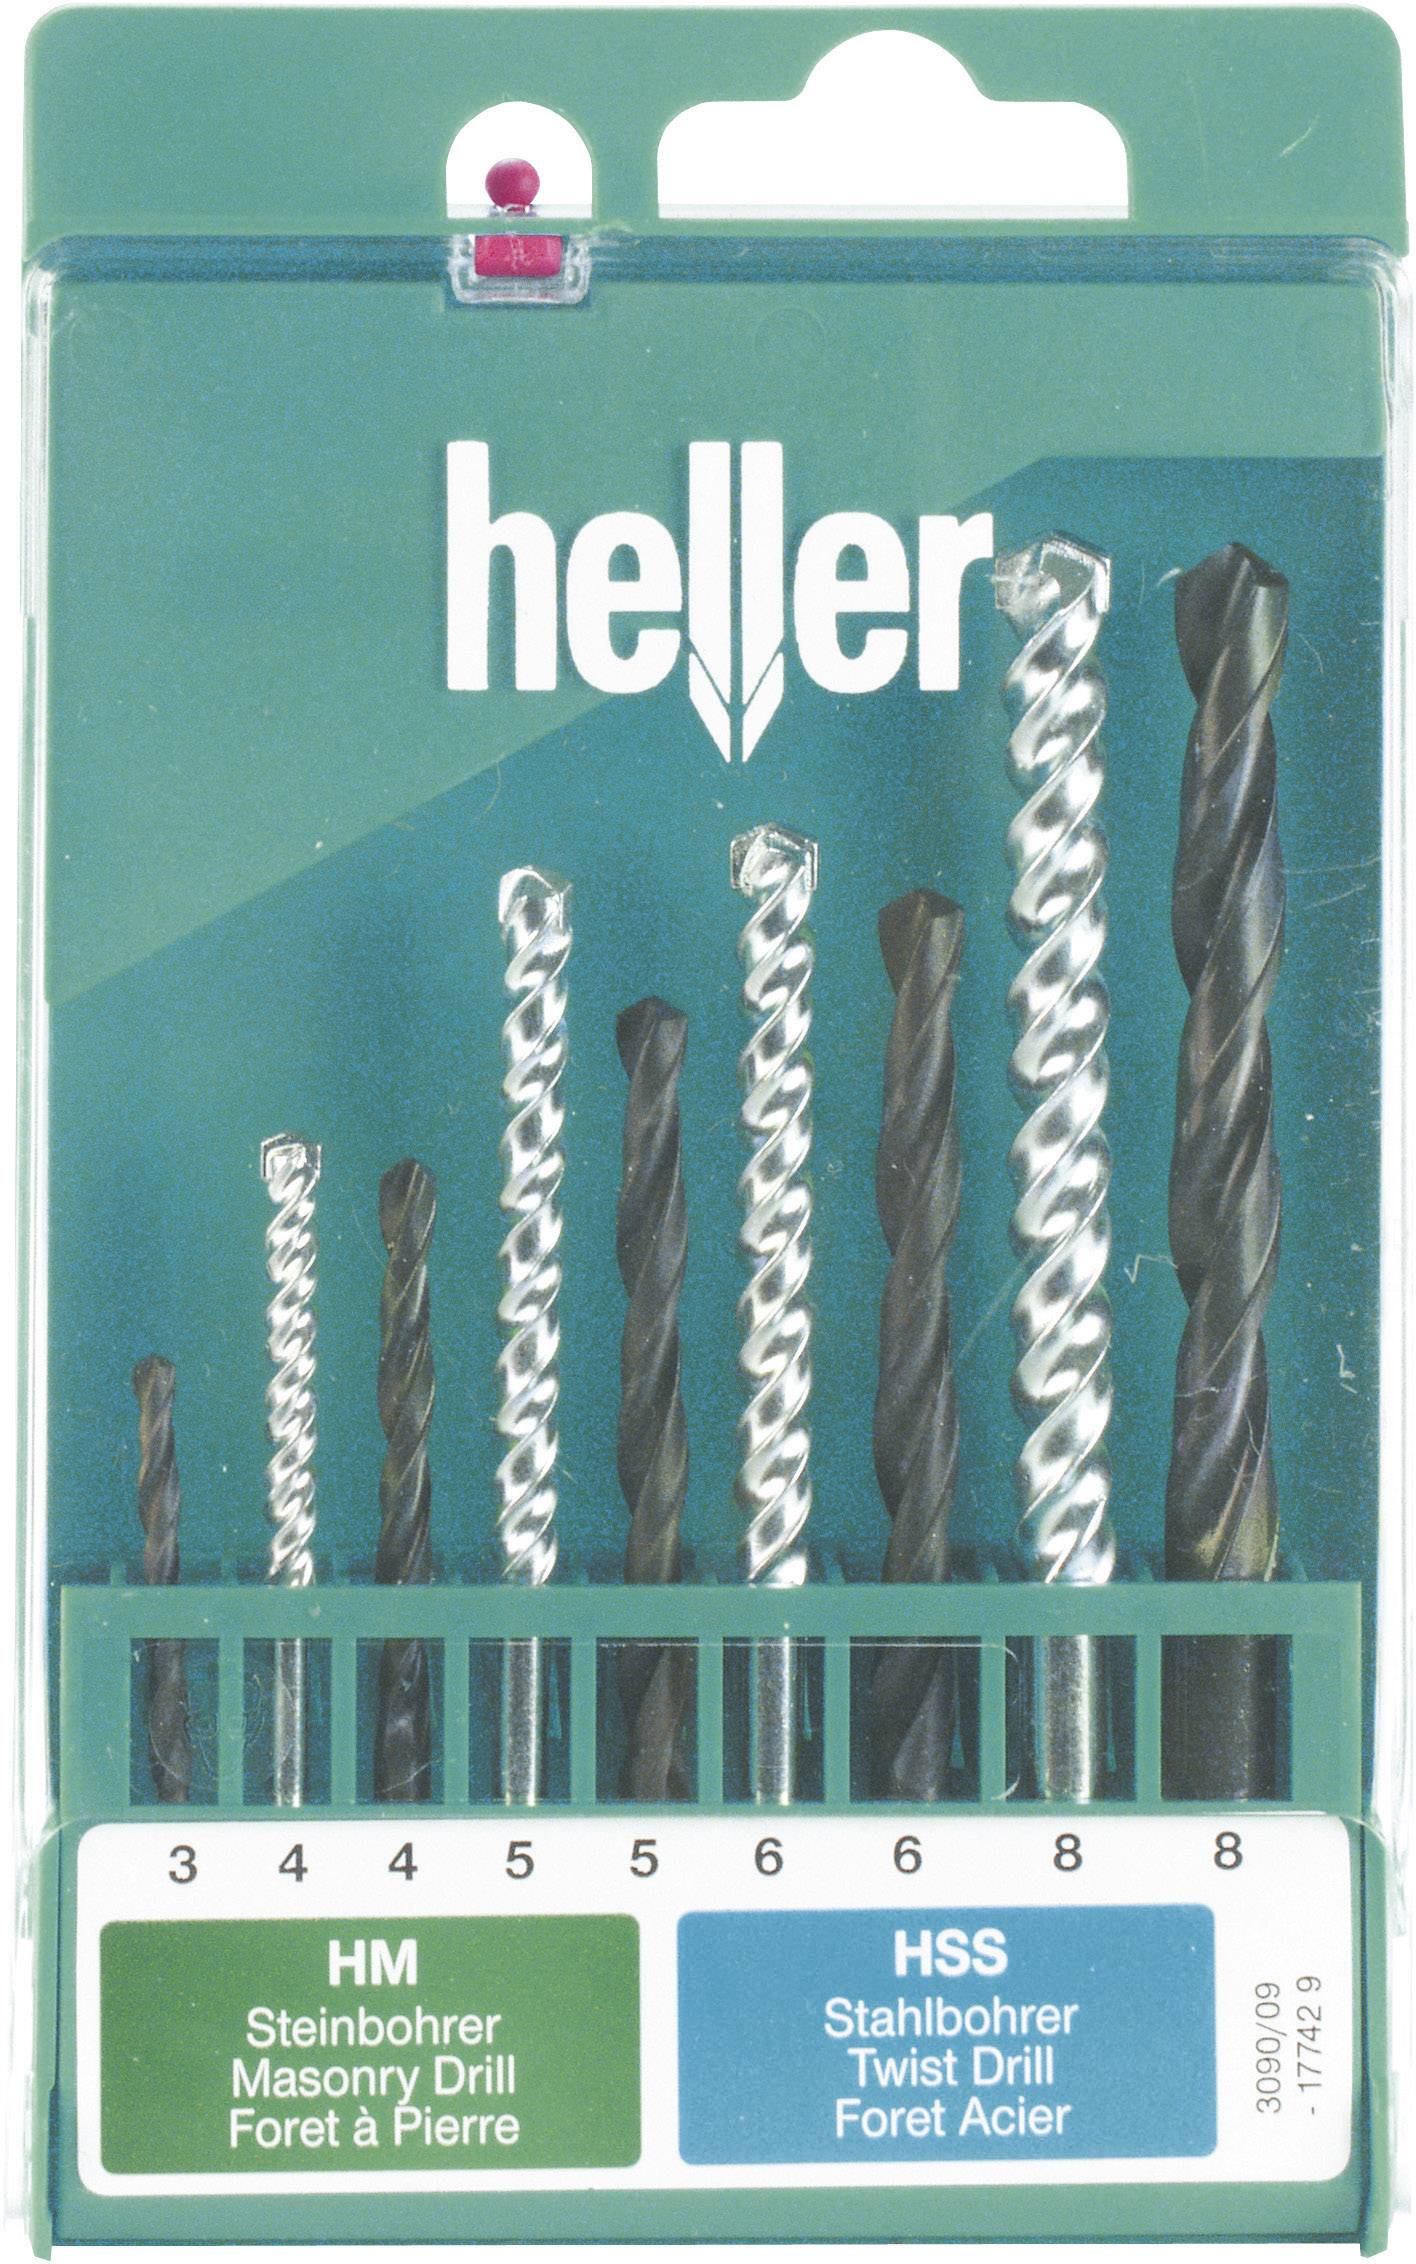 HELLER Universal-Bohrersortiment 9teilig Heller 17742 9